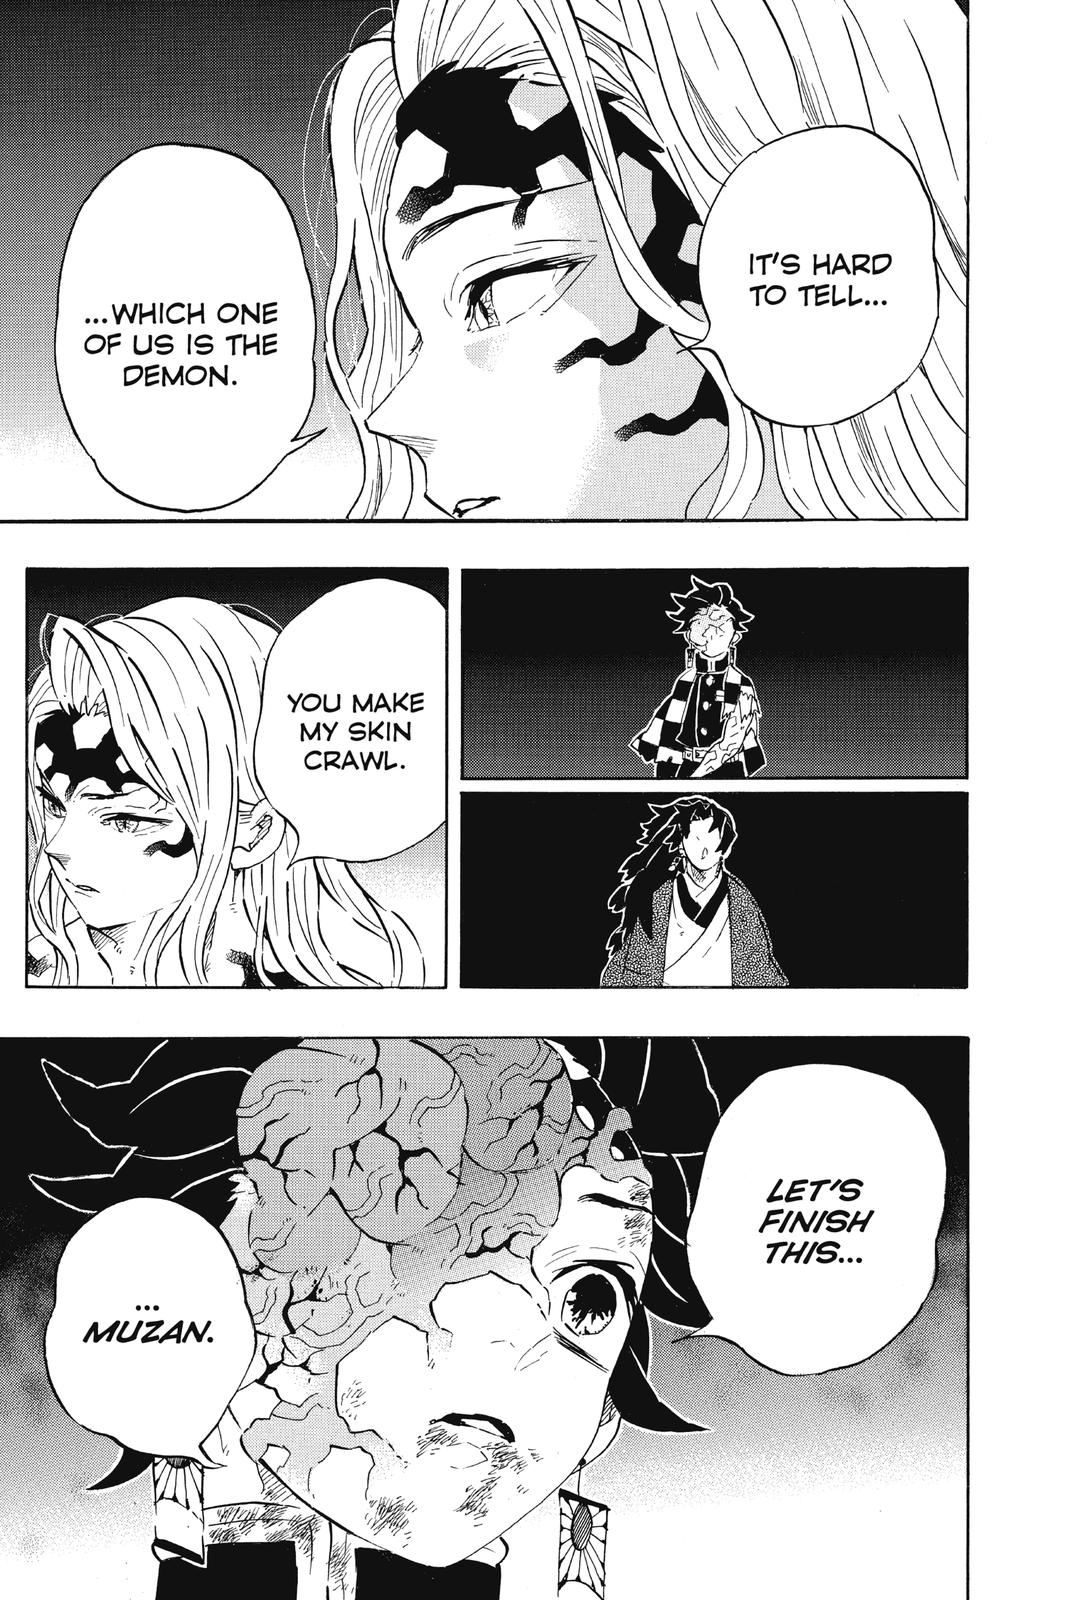 Demon Slayer Manga Manga Chapter - 191 - image 13